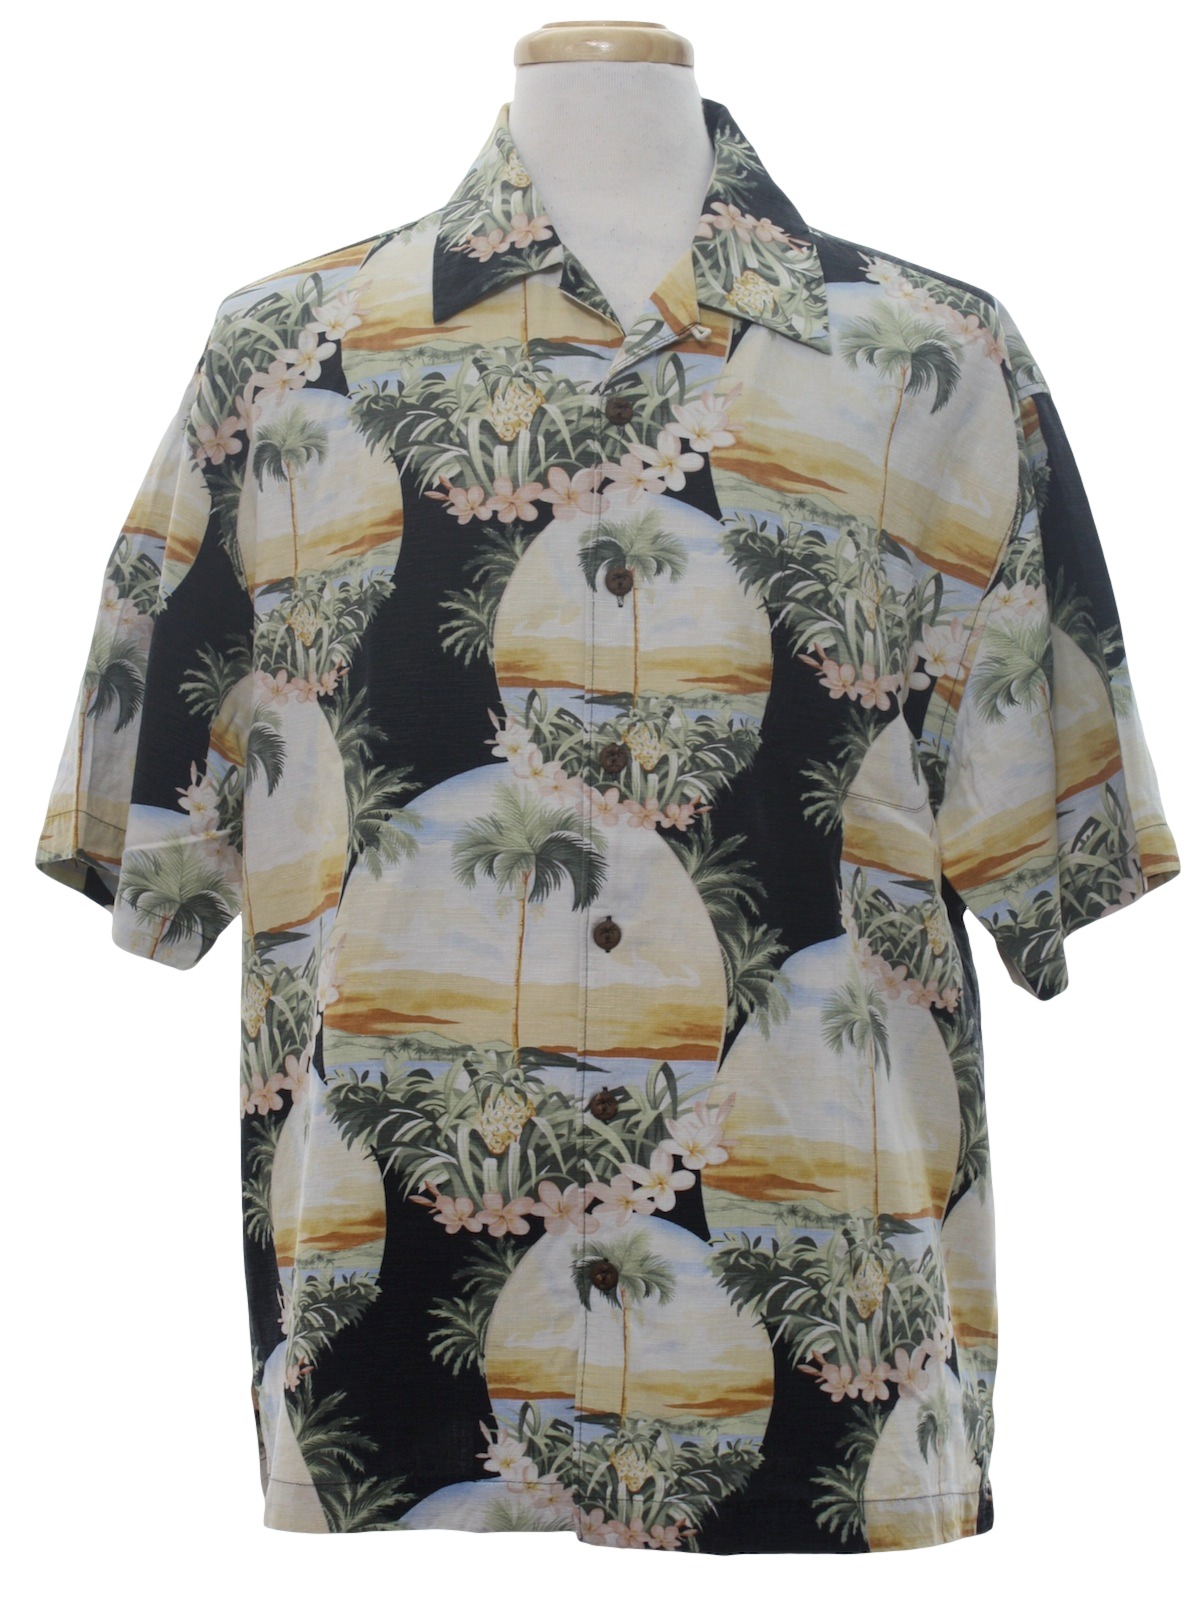 Retro 1990's Hawaiian Shirt (Jamaica Jaxx) : 90s -Jamaica Jaxx- Mens ...